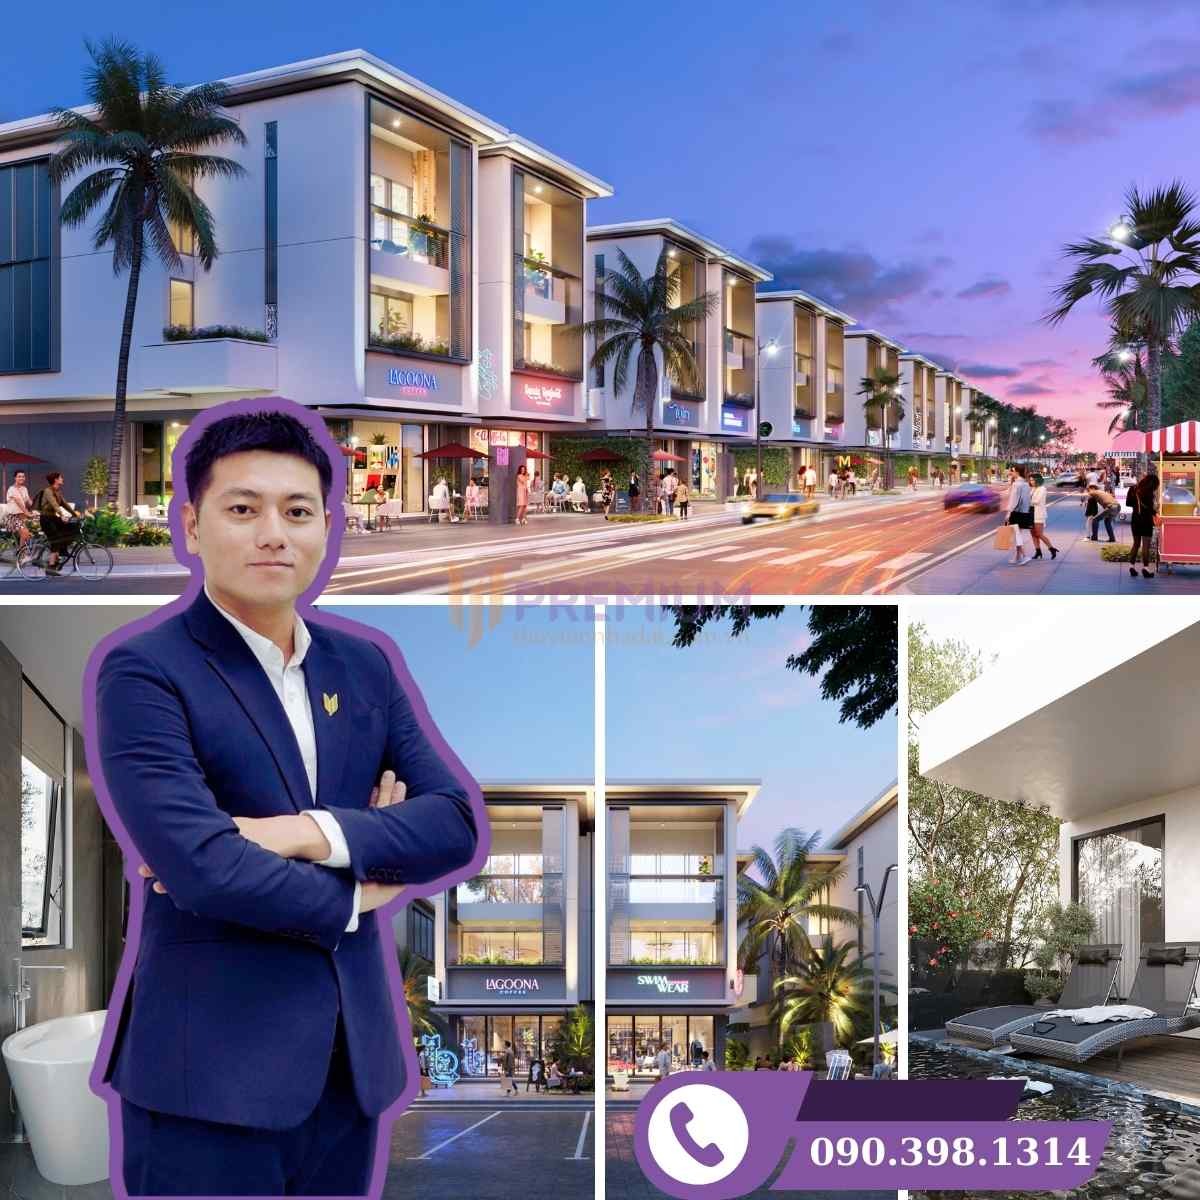 Biệt thự Oceania Shop Villa Lagoona Bình Châu - Shophouse đẳng cấp mặt tiền biển, giá từ 32,9 - 34,8 tỷ đồng